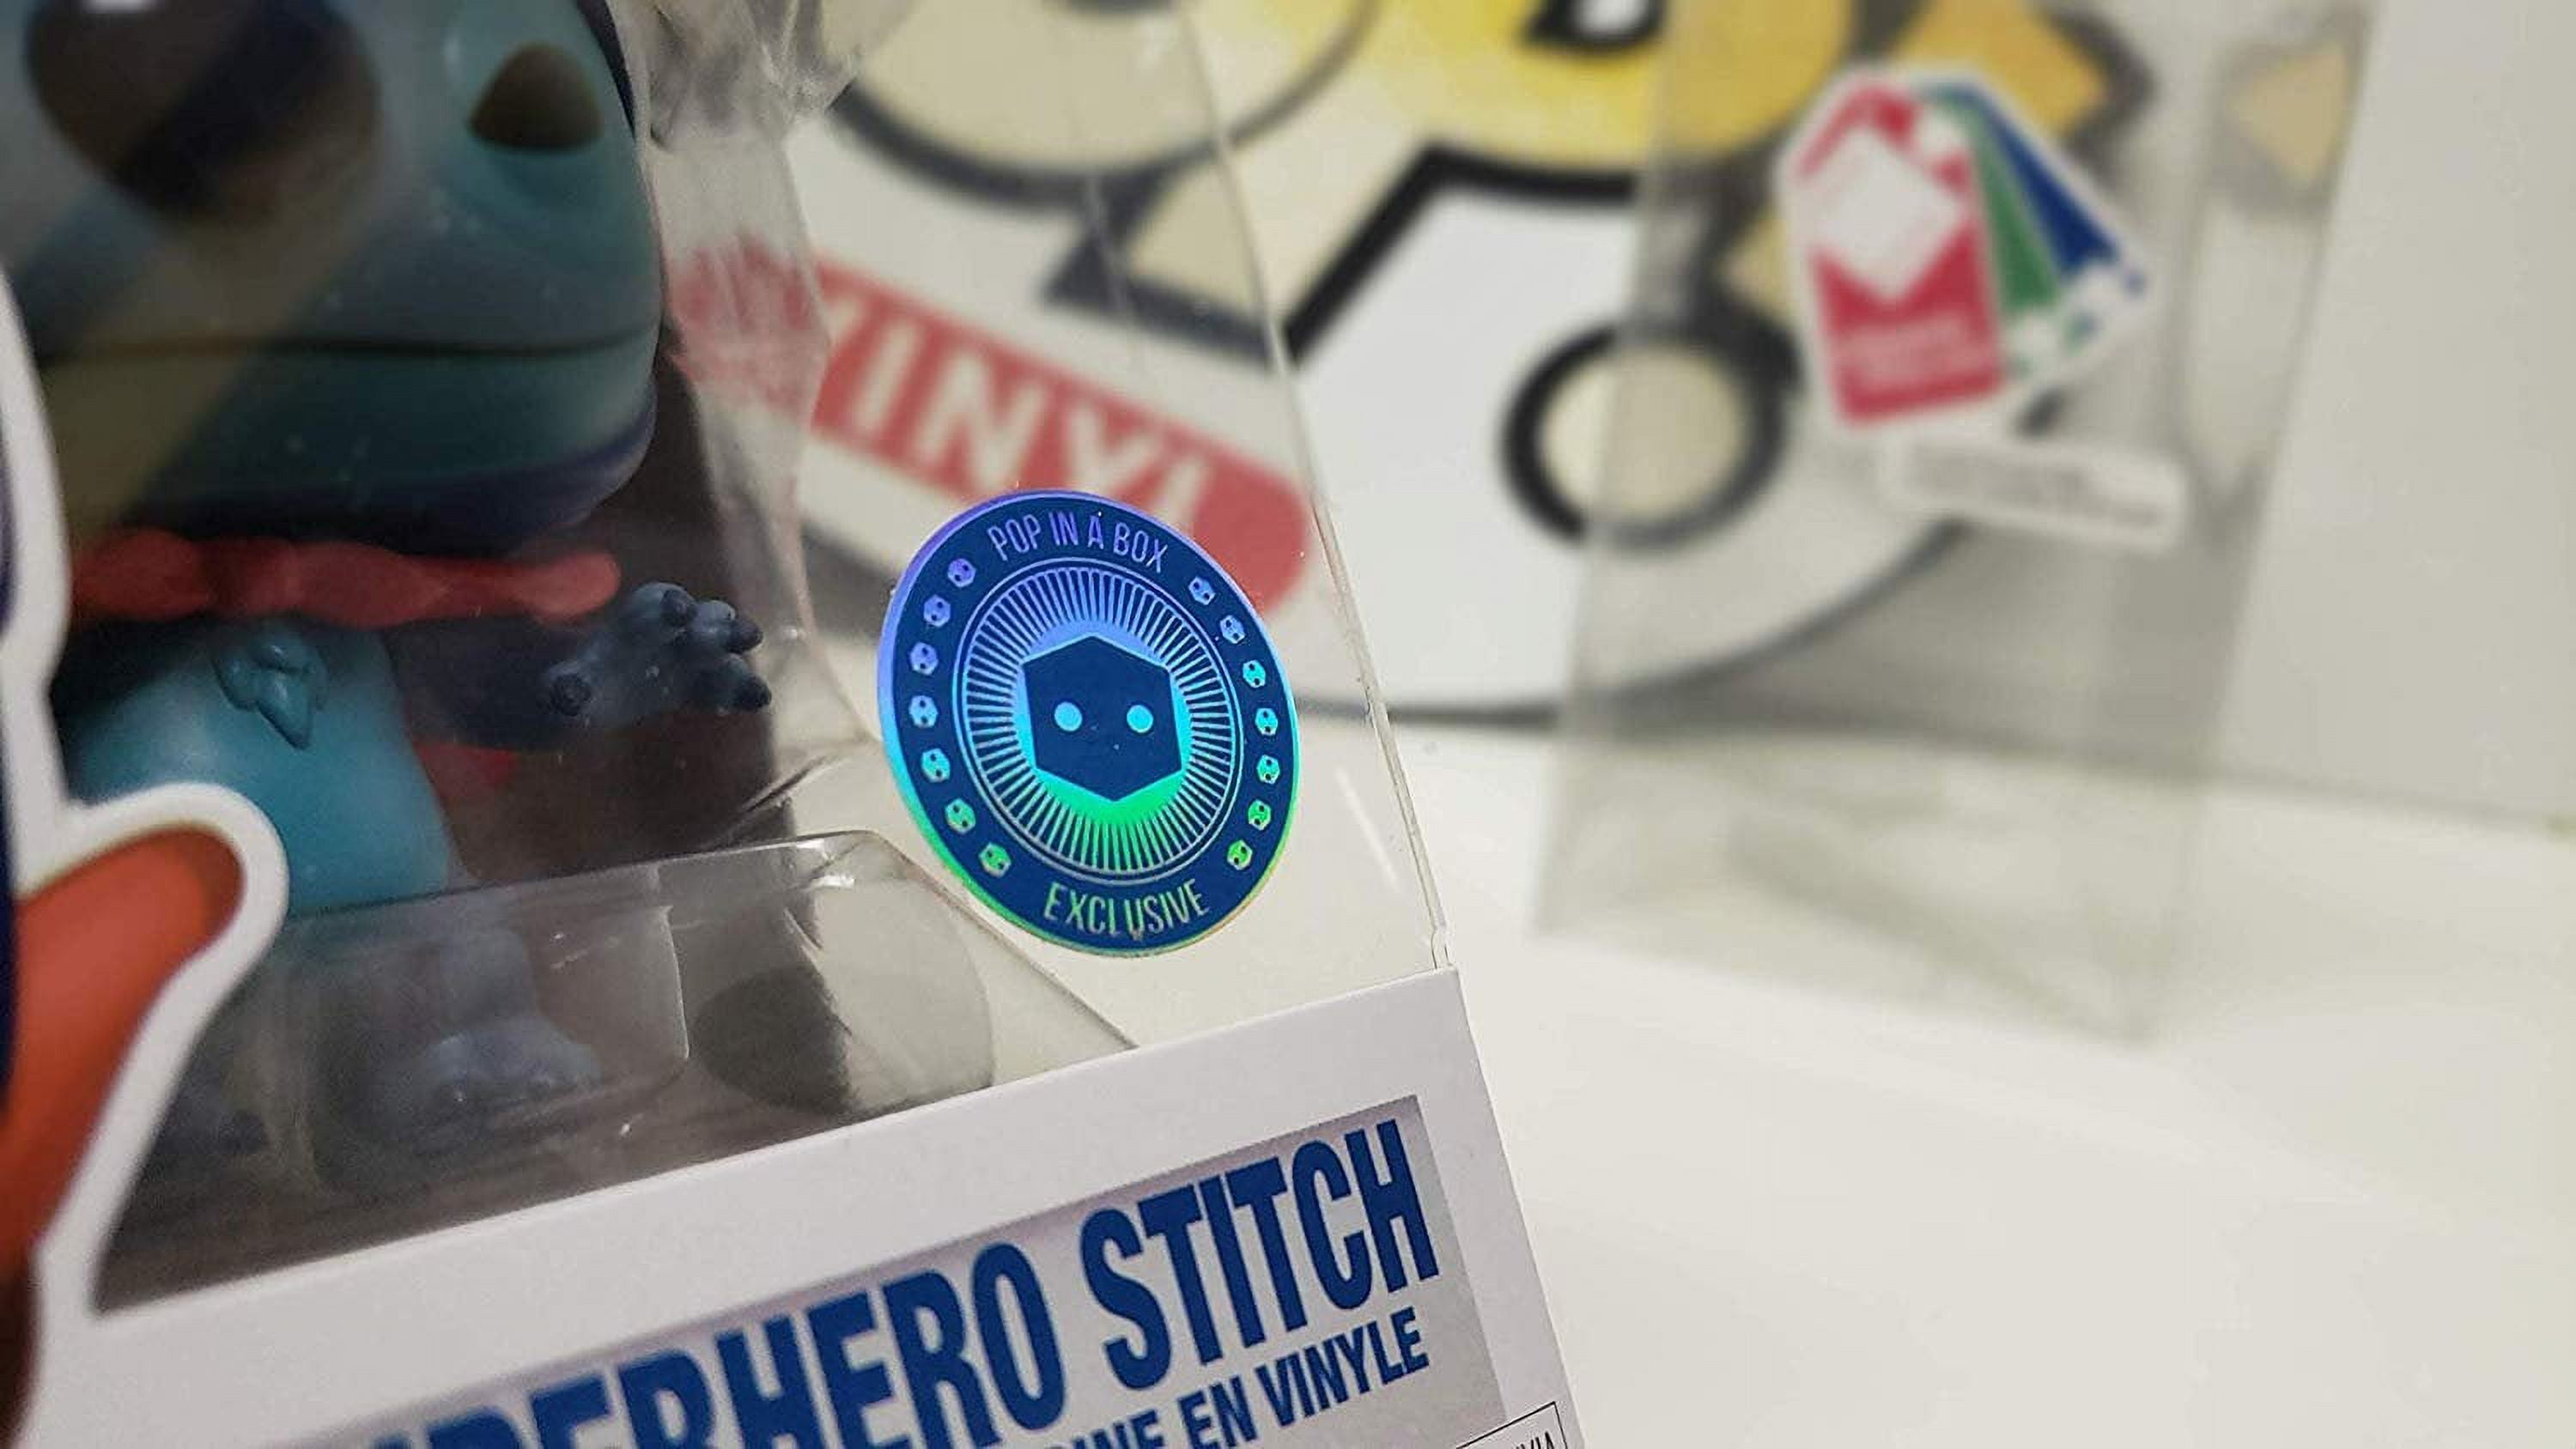 Superhero Stitch Lilo & Stitch Funko POP! – Evasive Studio